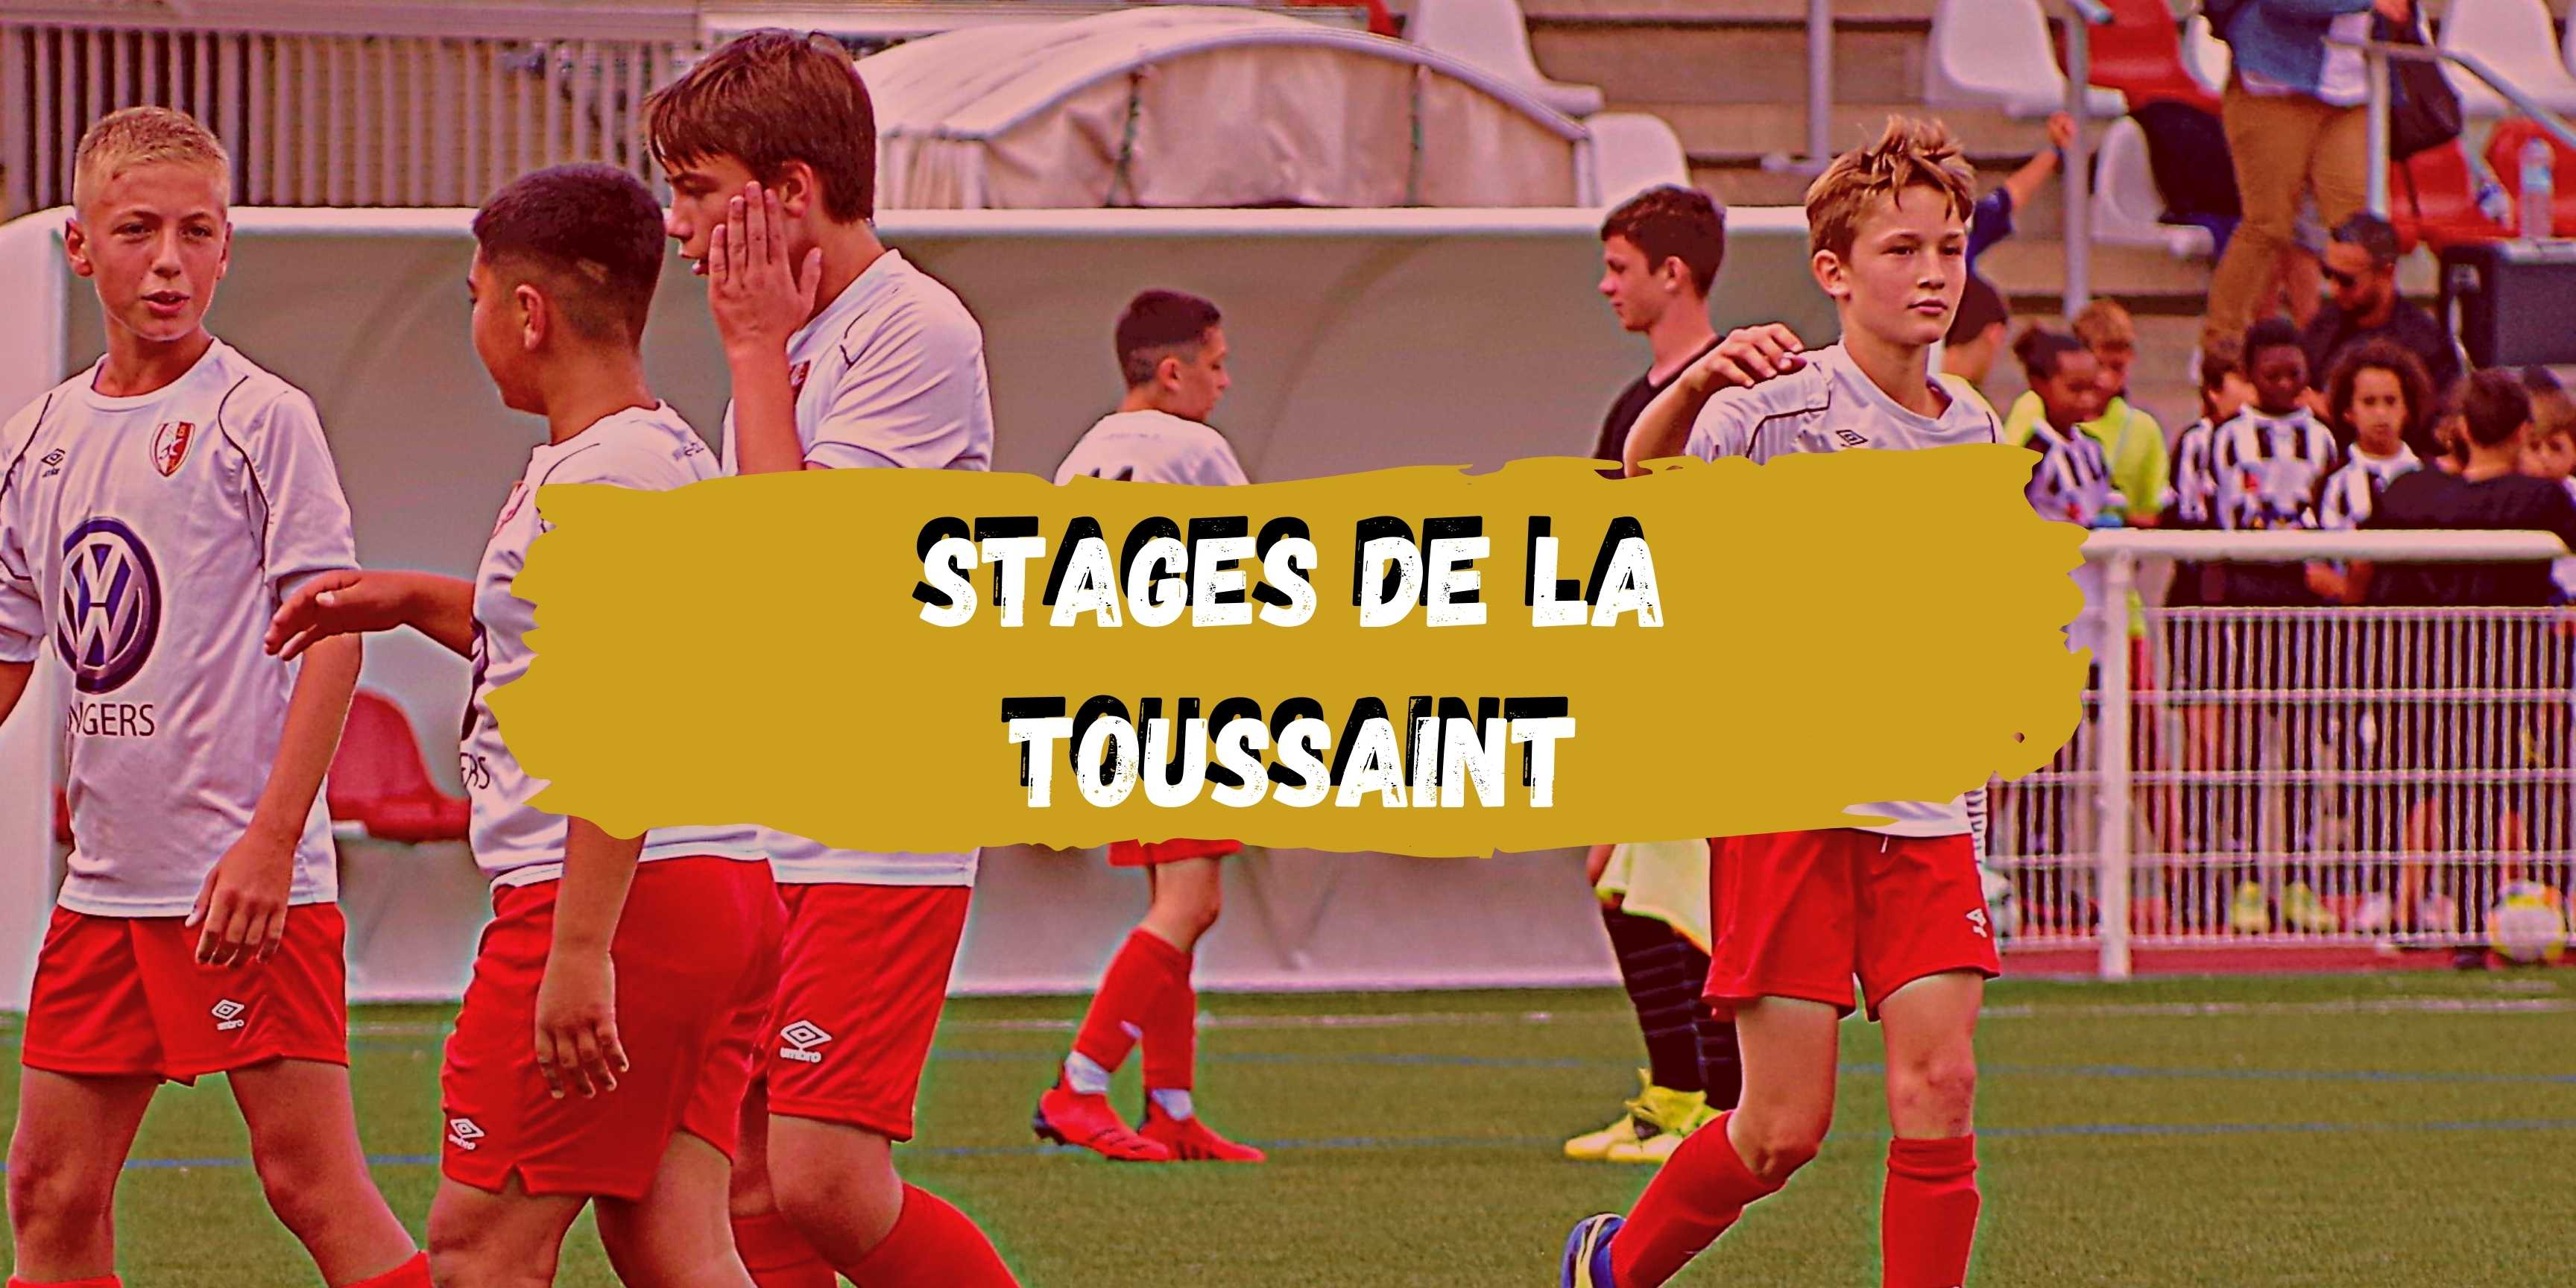 Stages de la Toussaint